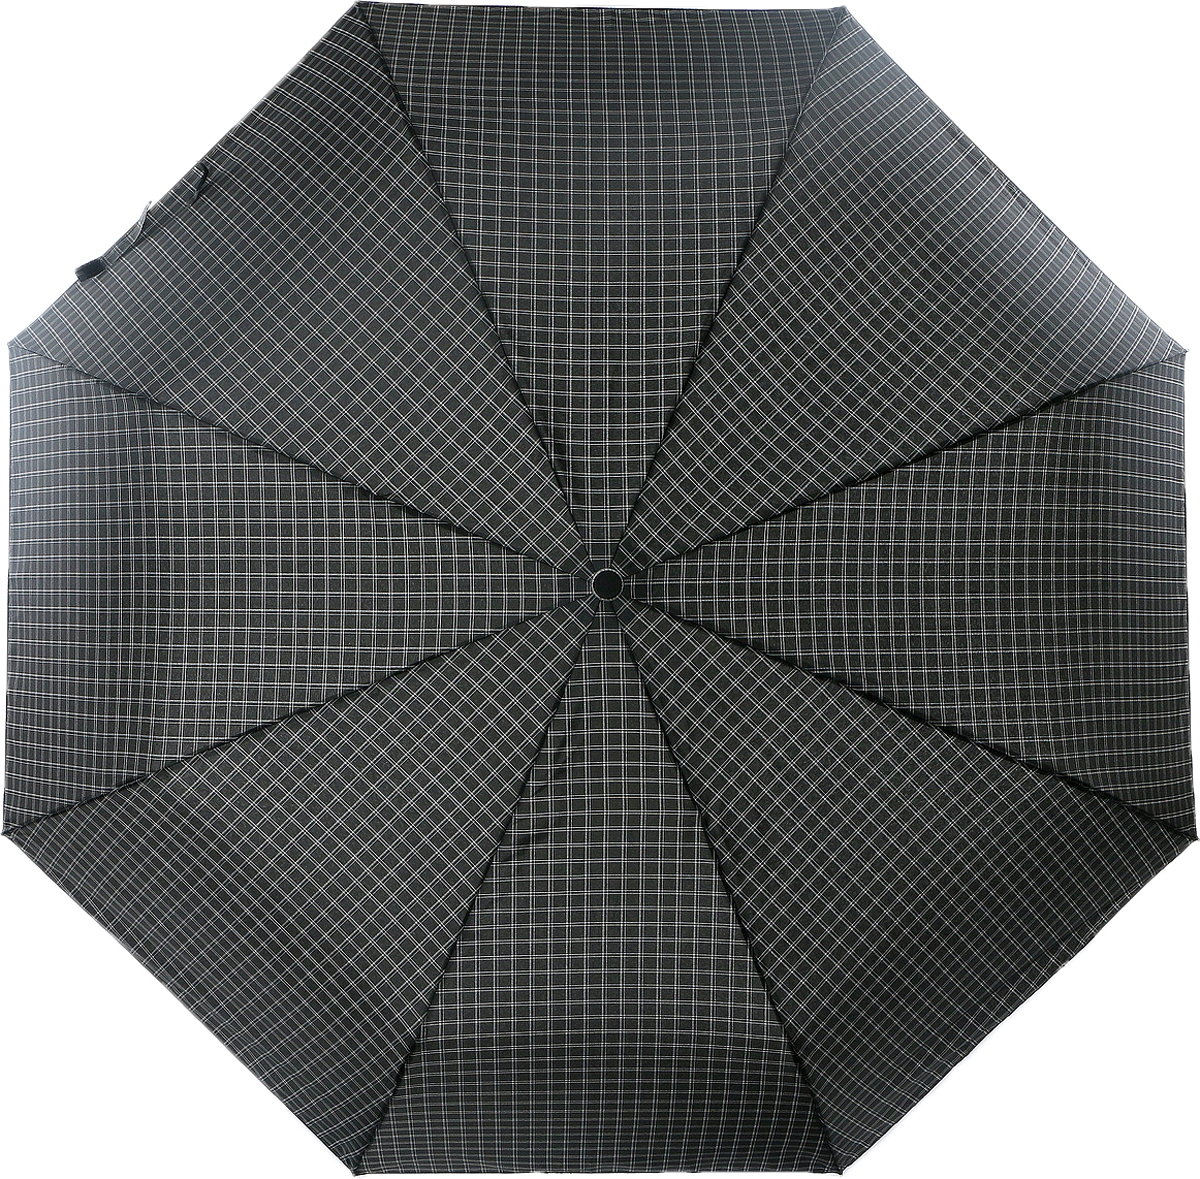 Зонт мужской Magic Rain, автомат, 3 сложения, цвет: черный, белый, серый. 7025-1703